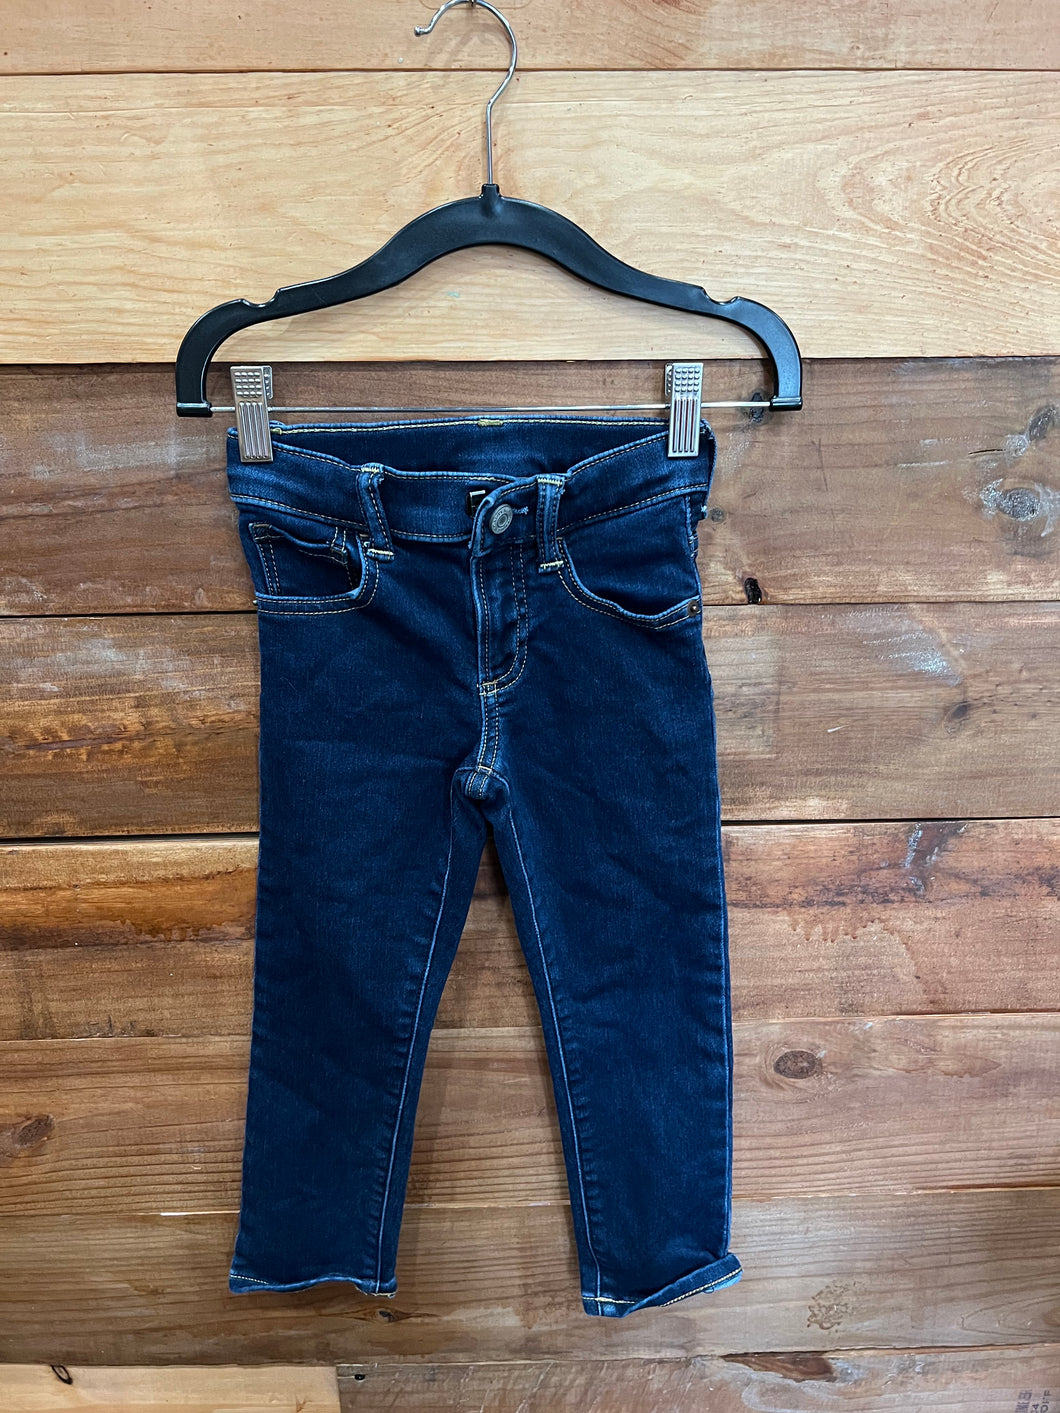 Gap Dark Wash Slim Skinny Jeans Size 4